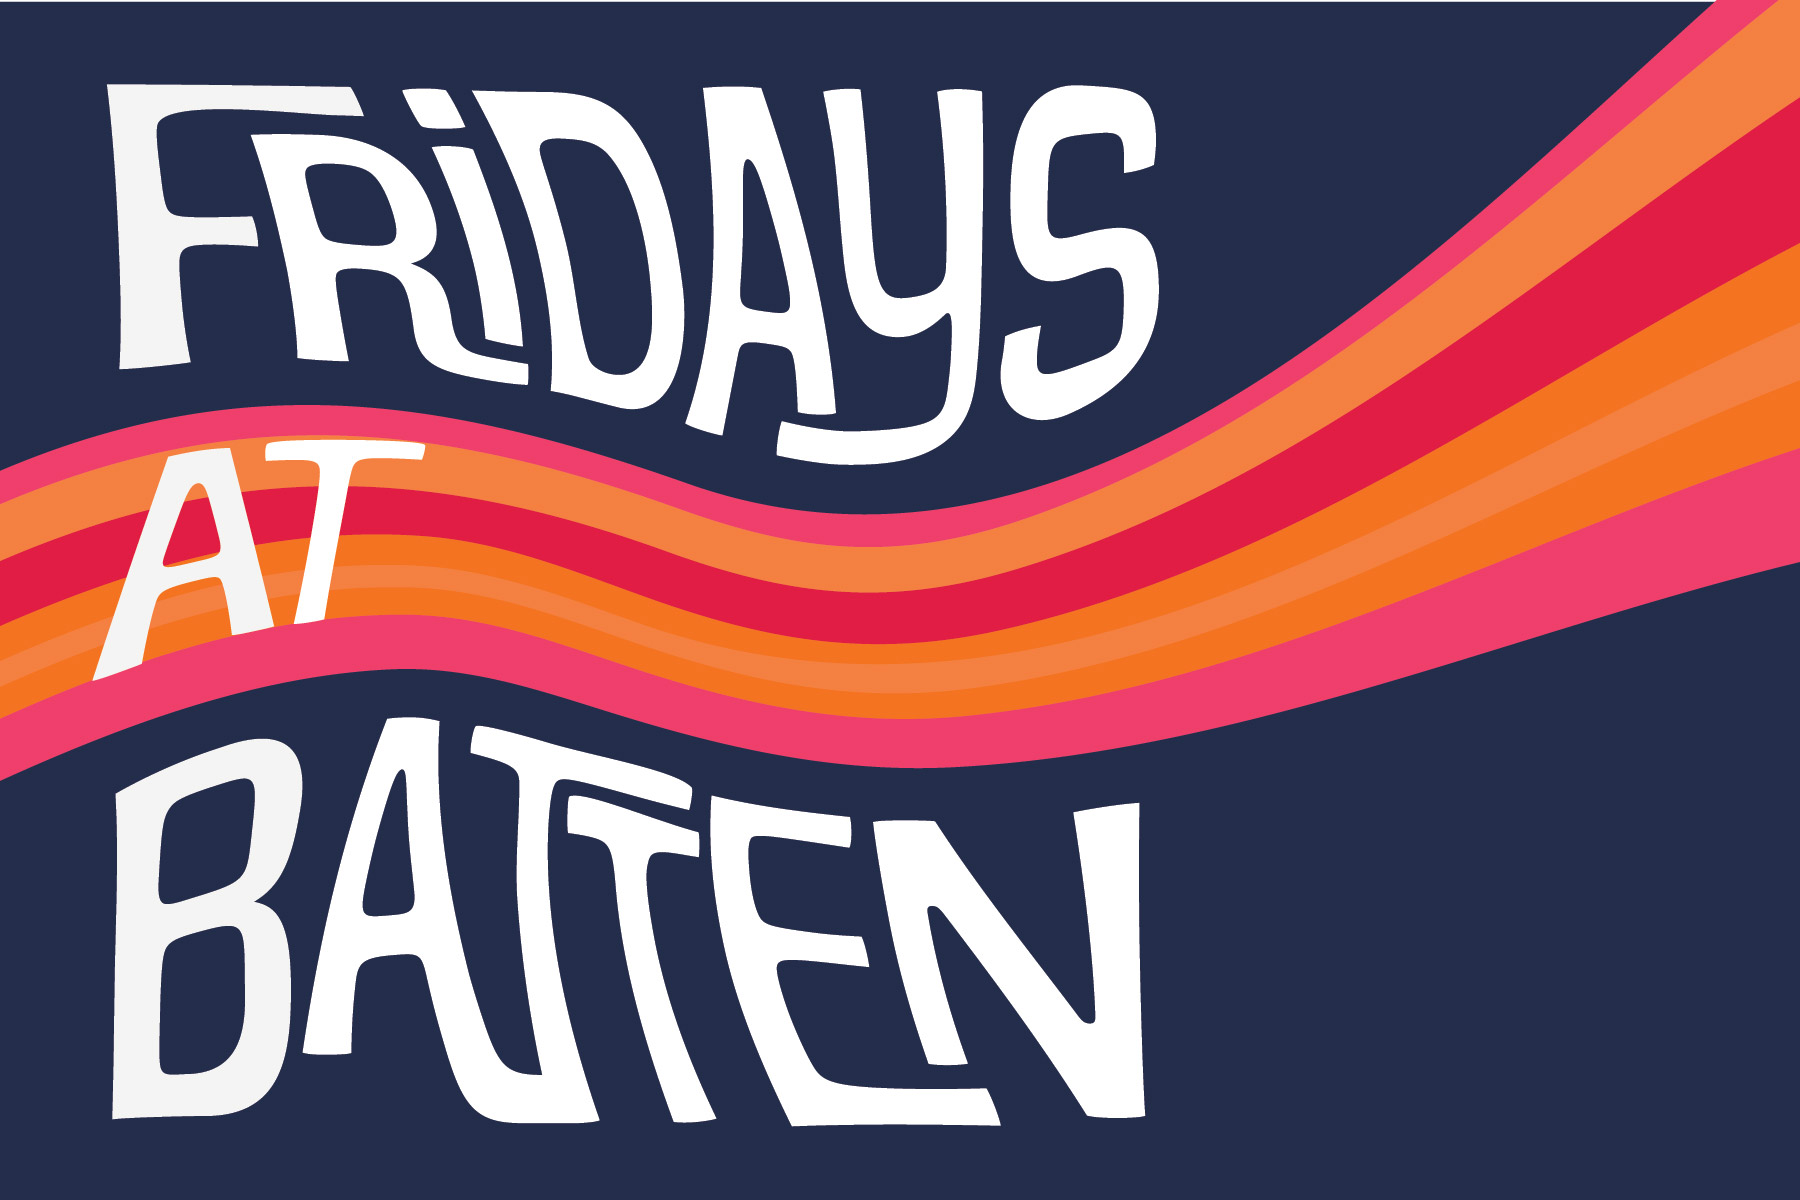 Fridays at Batten